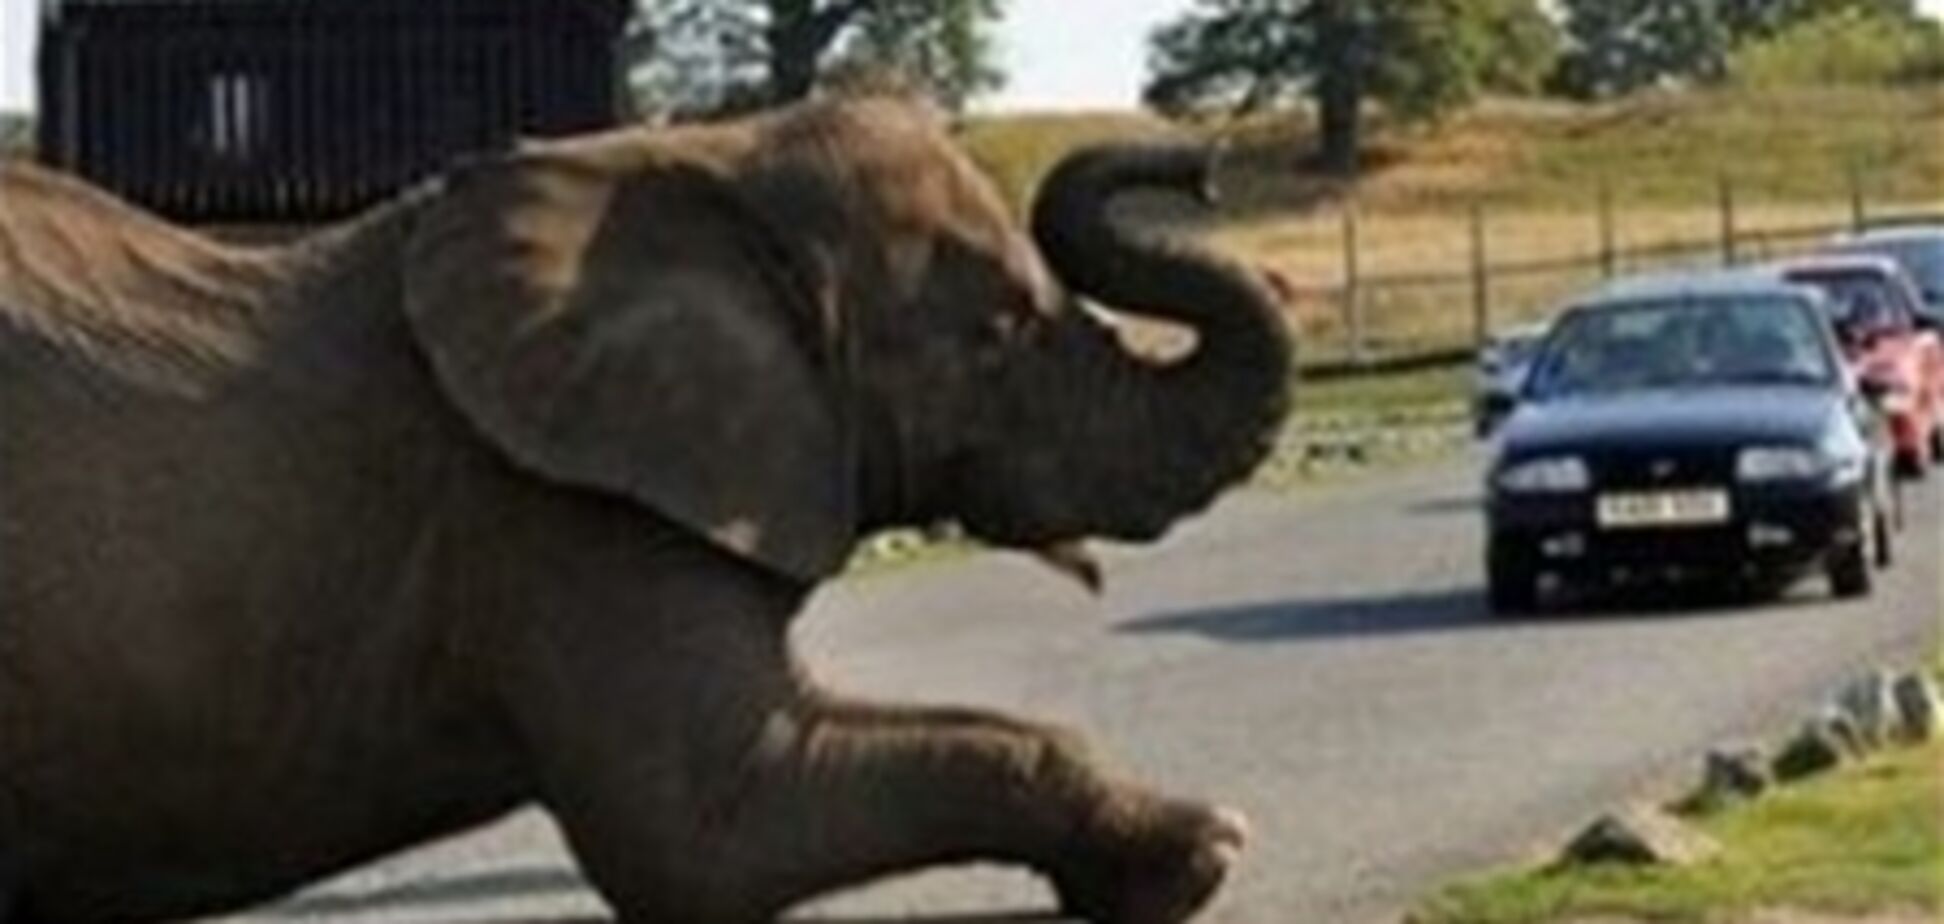 Задремавший слон устроил пробку в сафари-парке